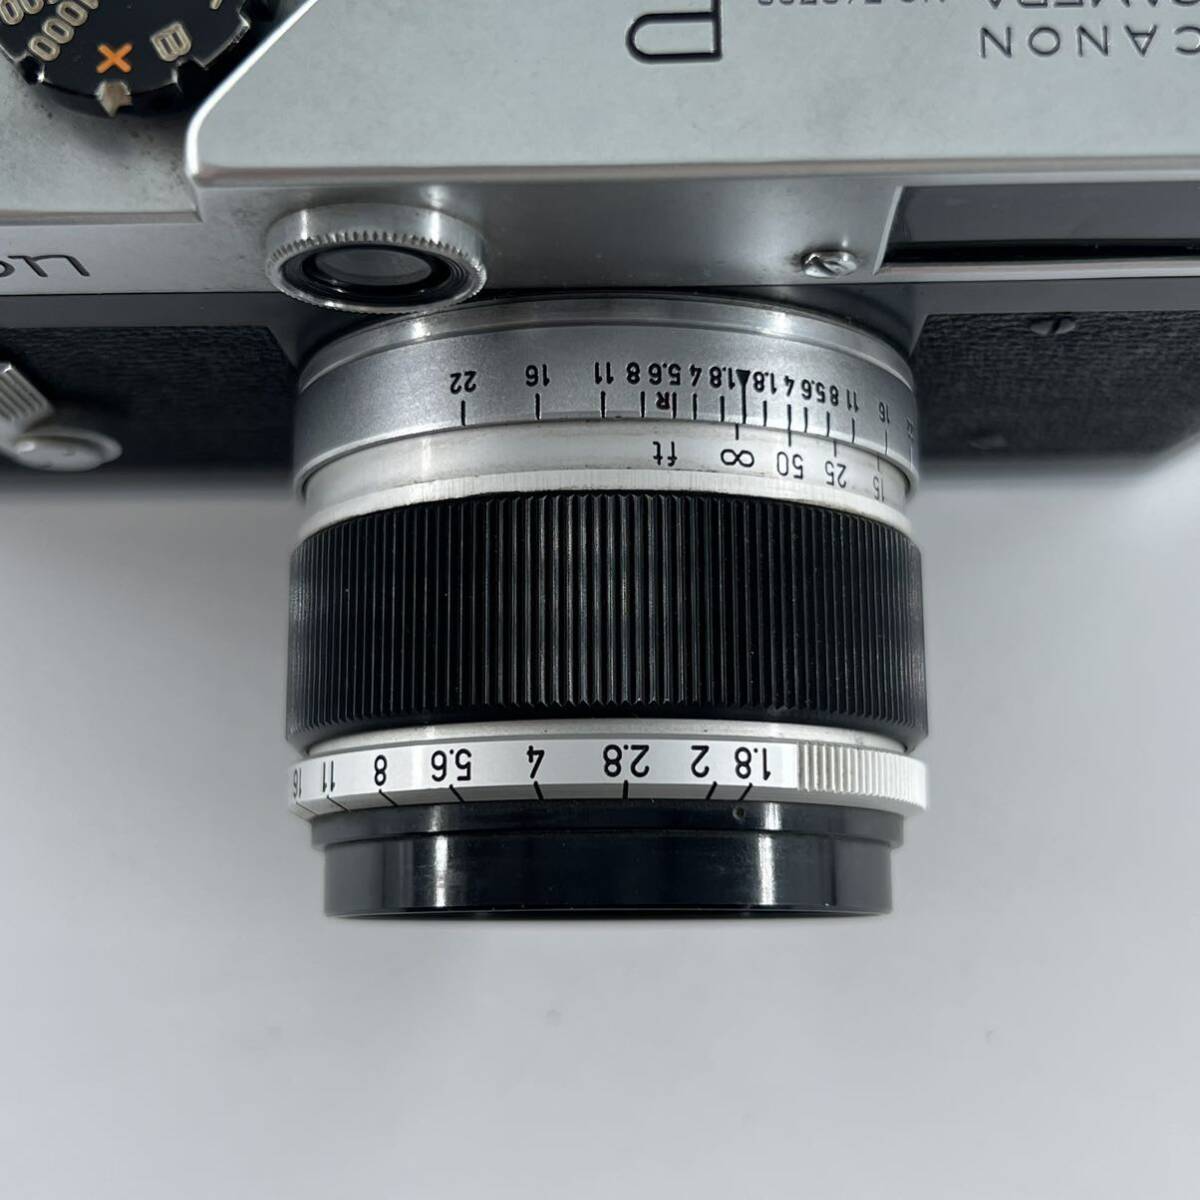 G4s Canon キャノン P 50mm f1.8 レンズセット カメラ フィルムカメラ シャッター音確認済みの画像7